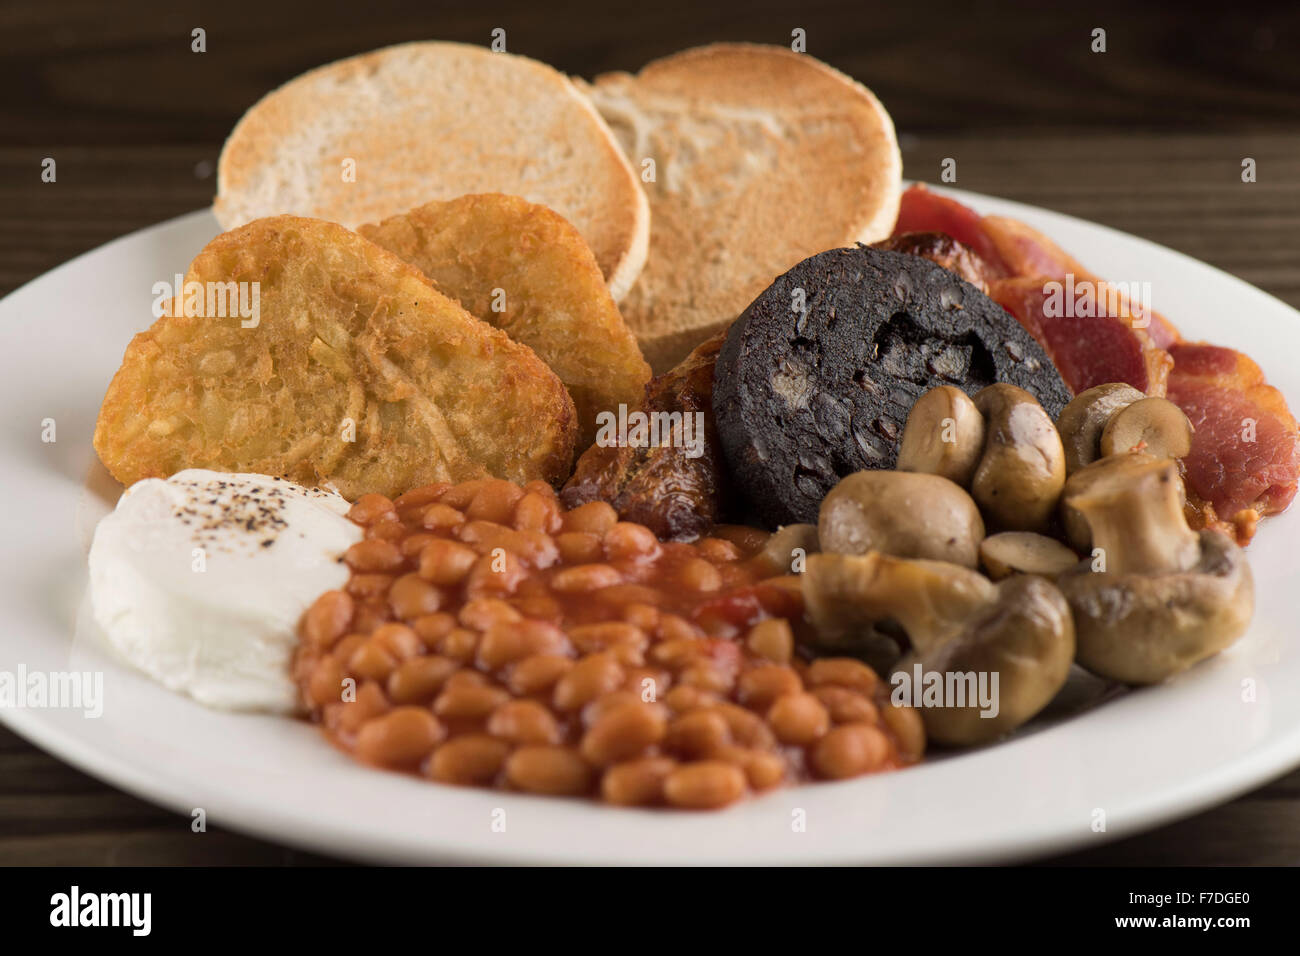 Un petit-déjeuner anglais traditionnel dimanche composé de haricots, champignons, saucisses, boudin noir, muffins anglais oeuf et bacon. Banque D'Images